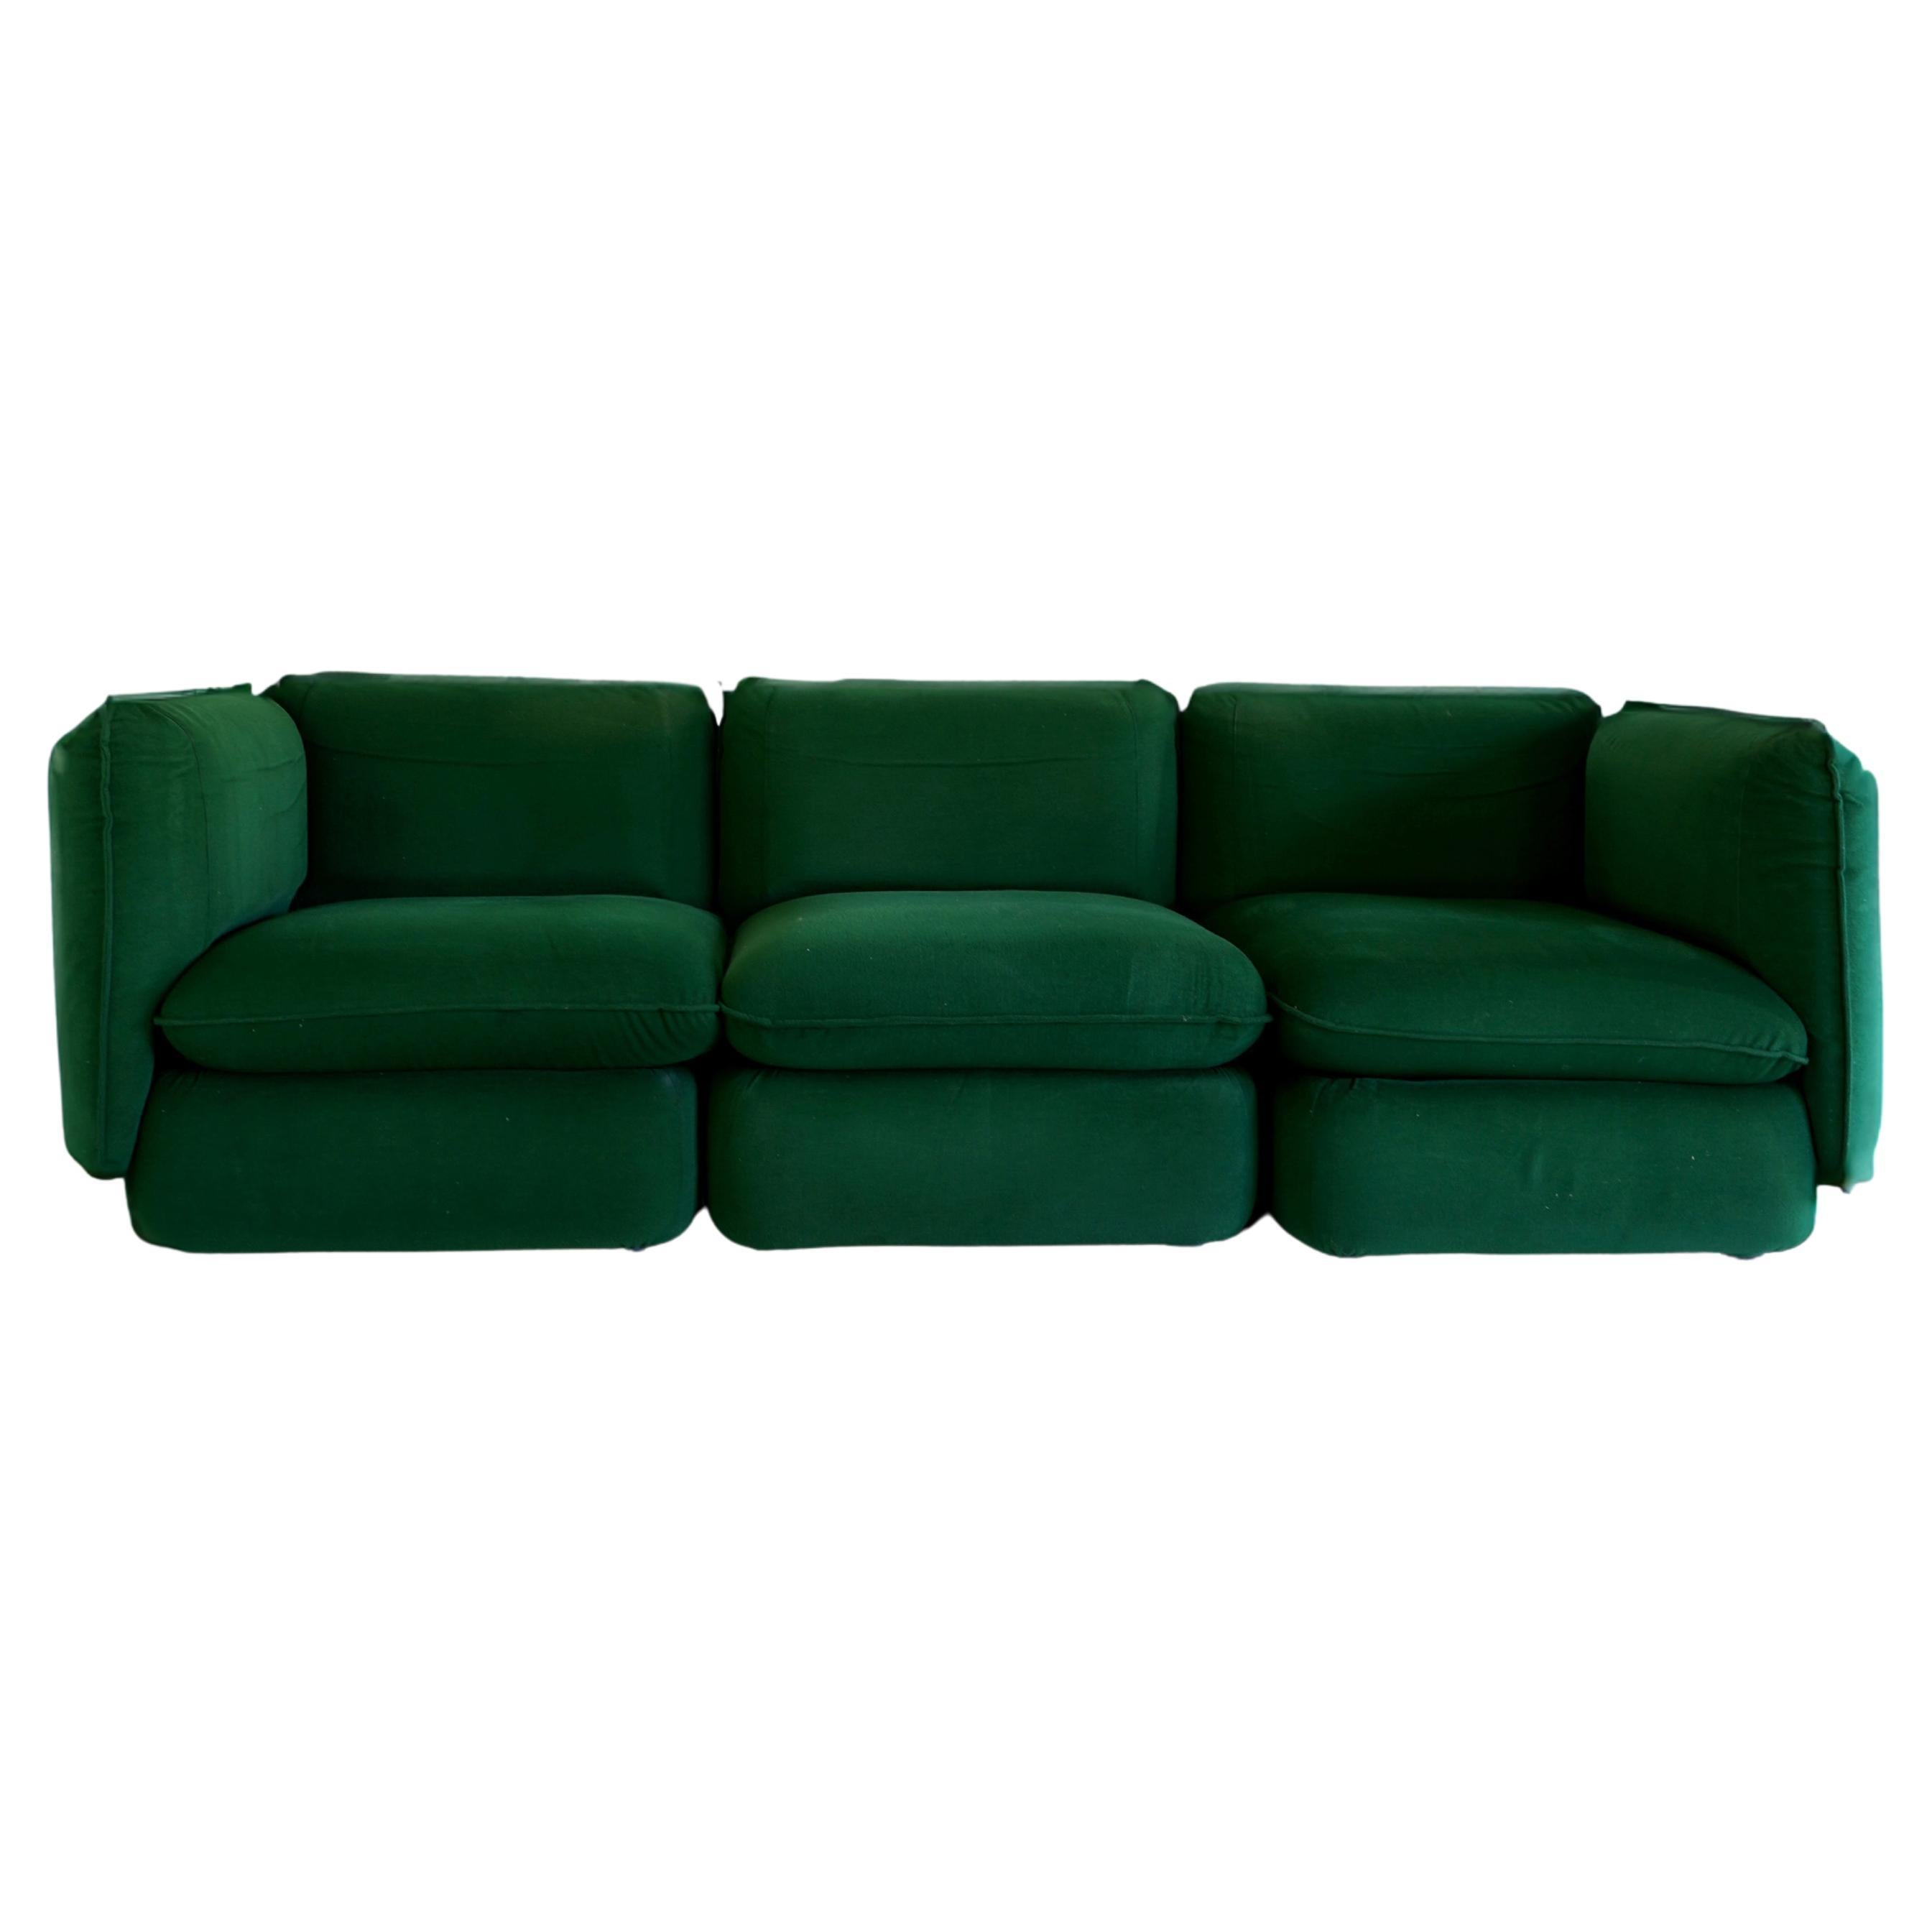 Modulares 3-Sitz-Sofa aus grüner Chenille, IPE Cavalli, Italien